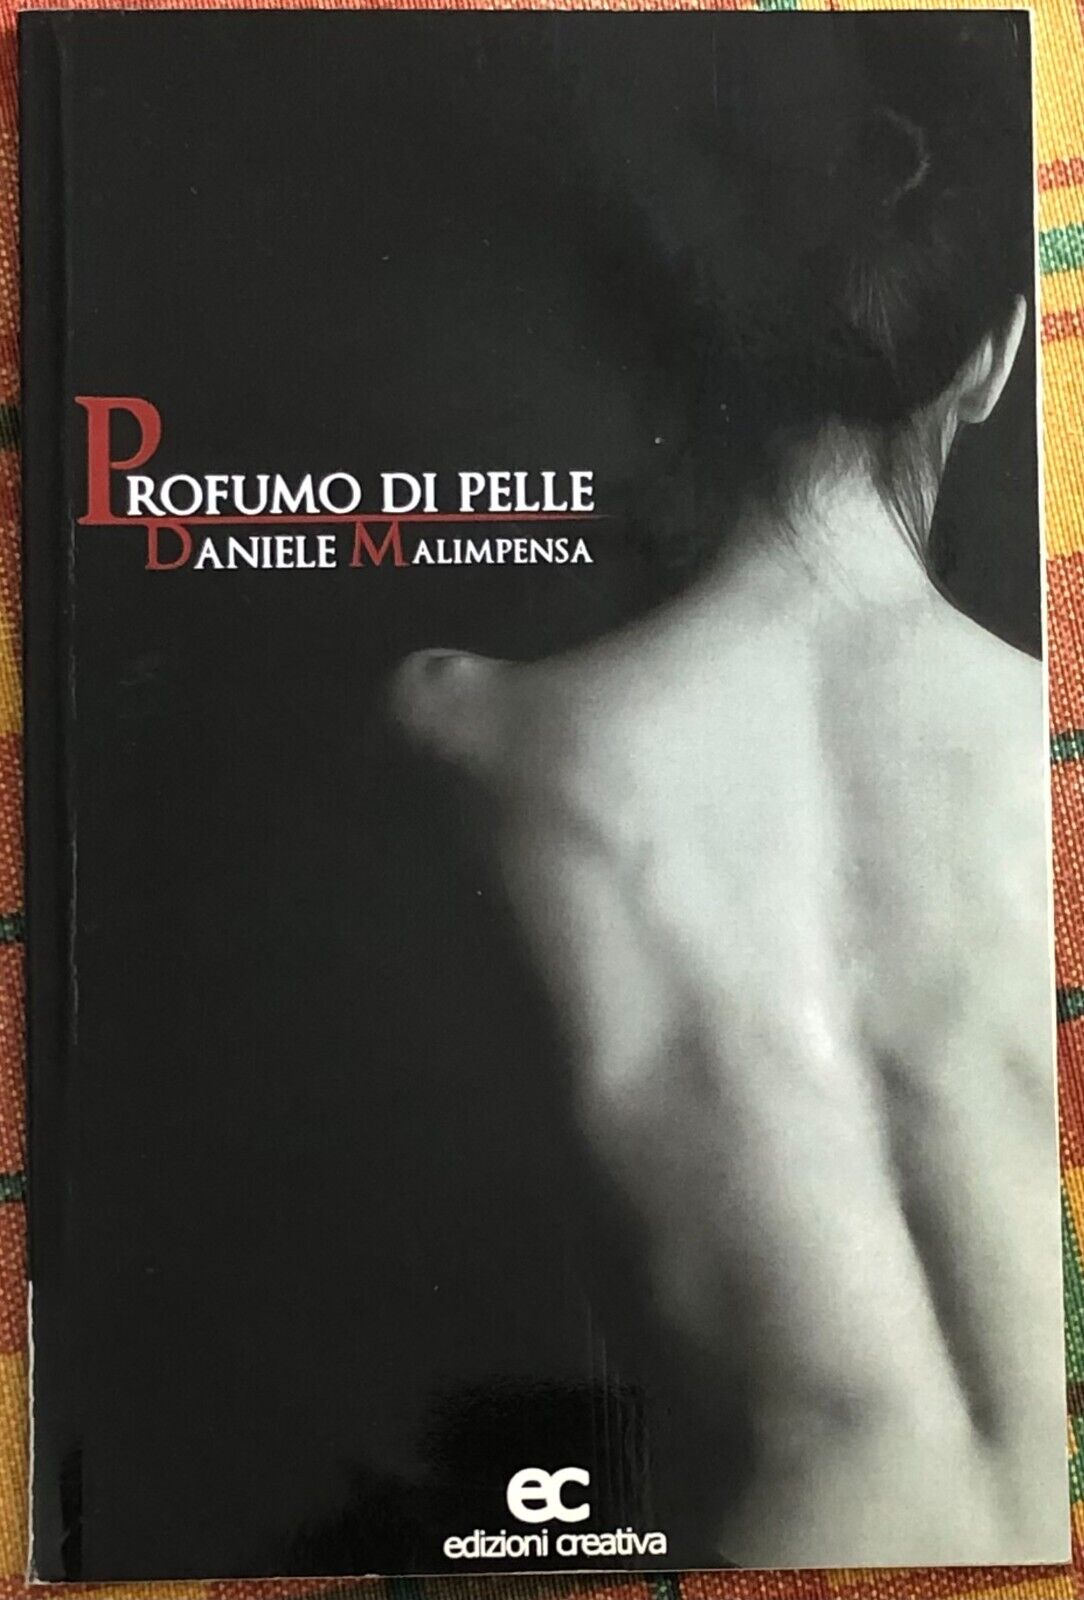 Profumo di pelle di Daniele Malimpensa, 2008, Edizioni Creativa